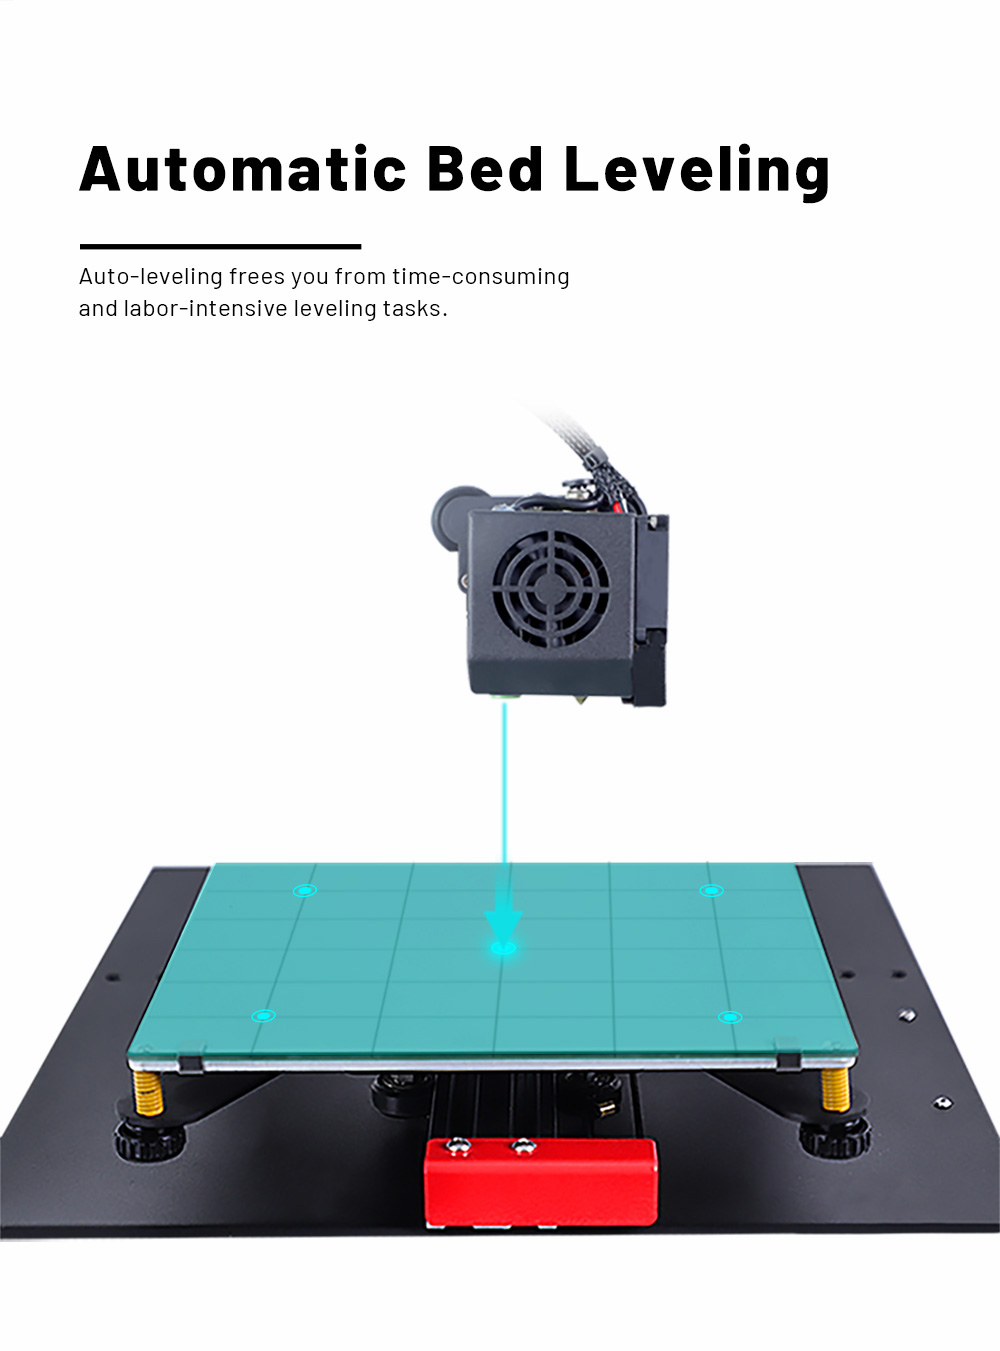 Anet ET4 FDM 3D Printer Touch Control  Quick Assembly